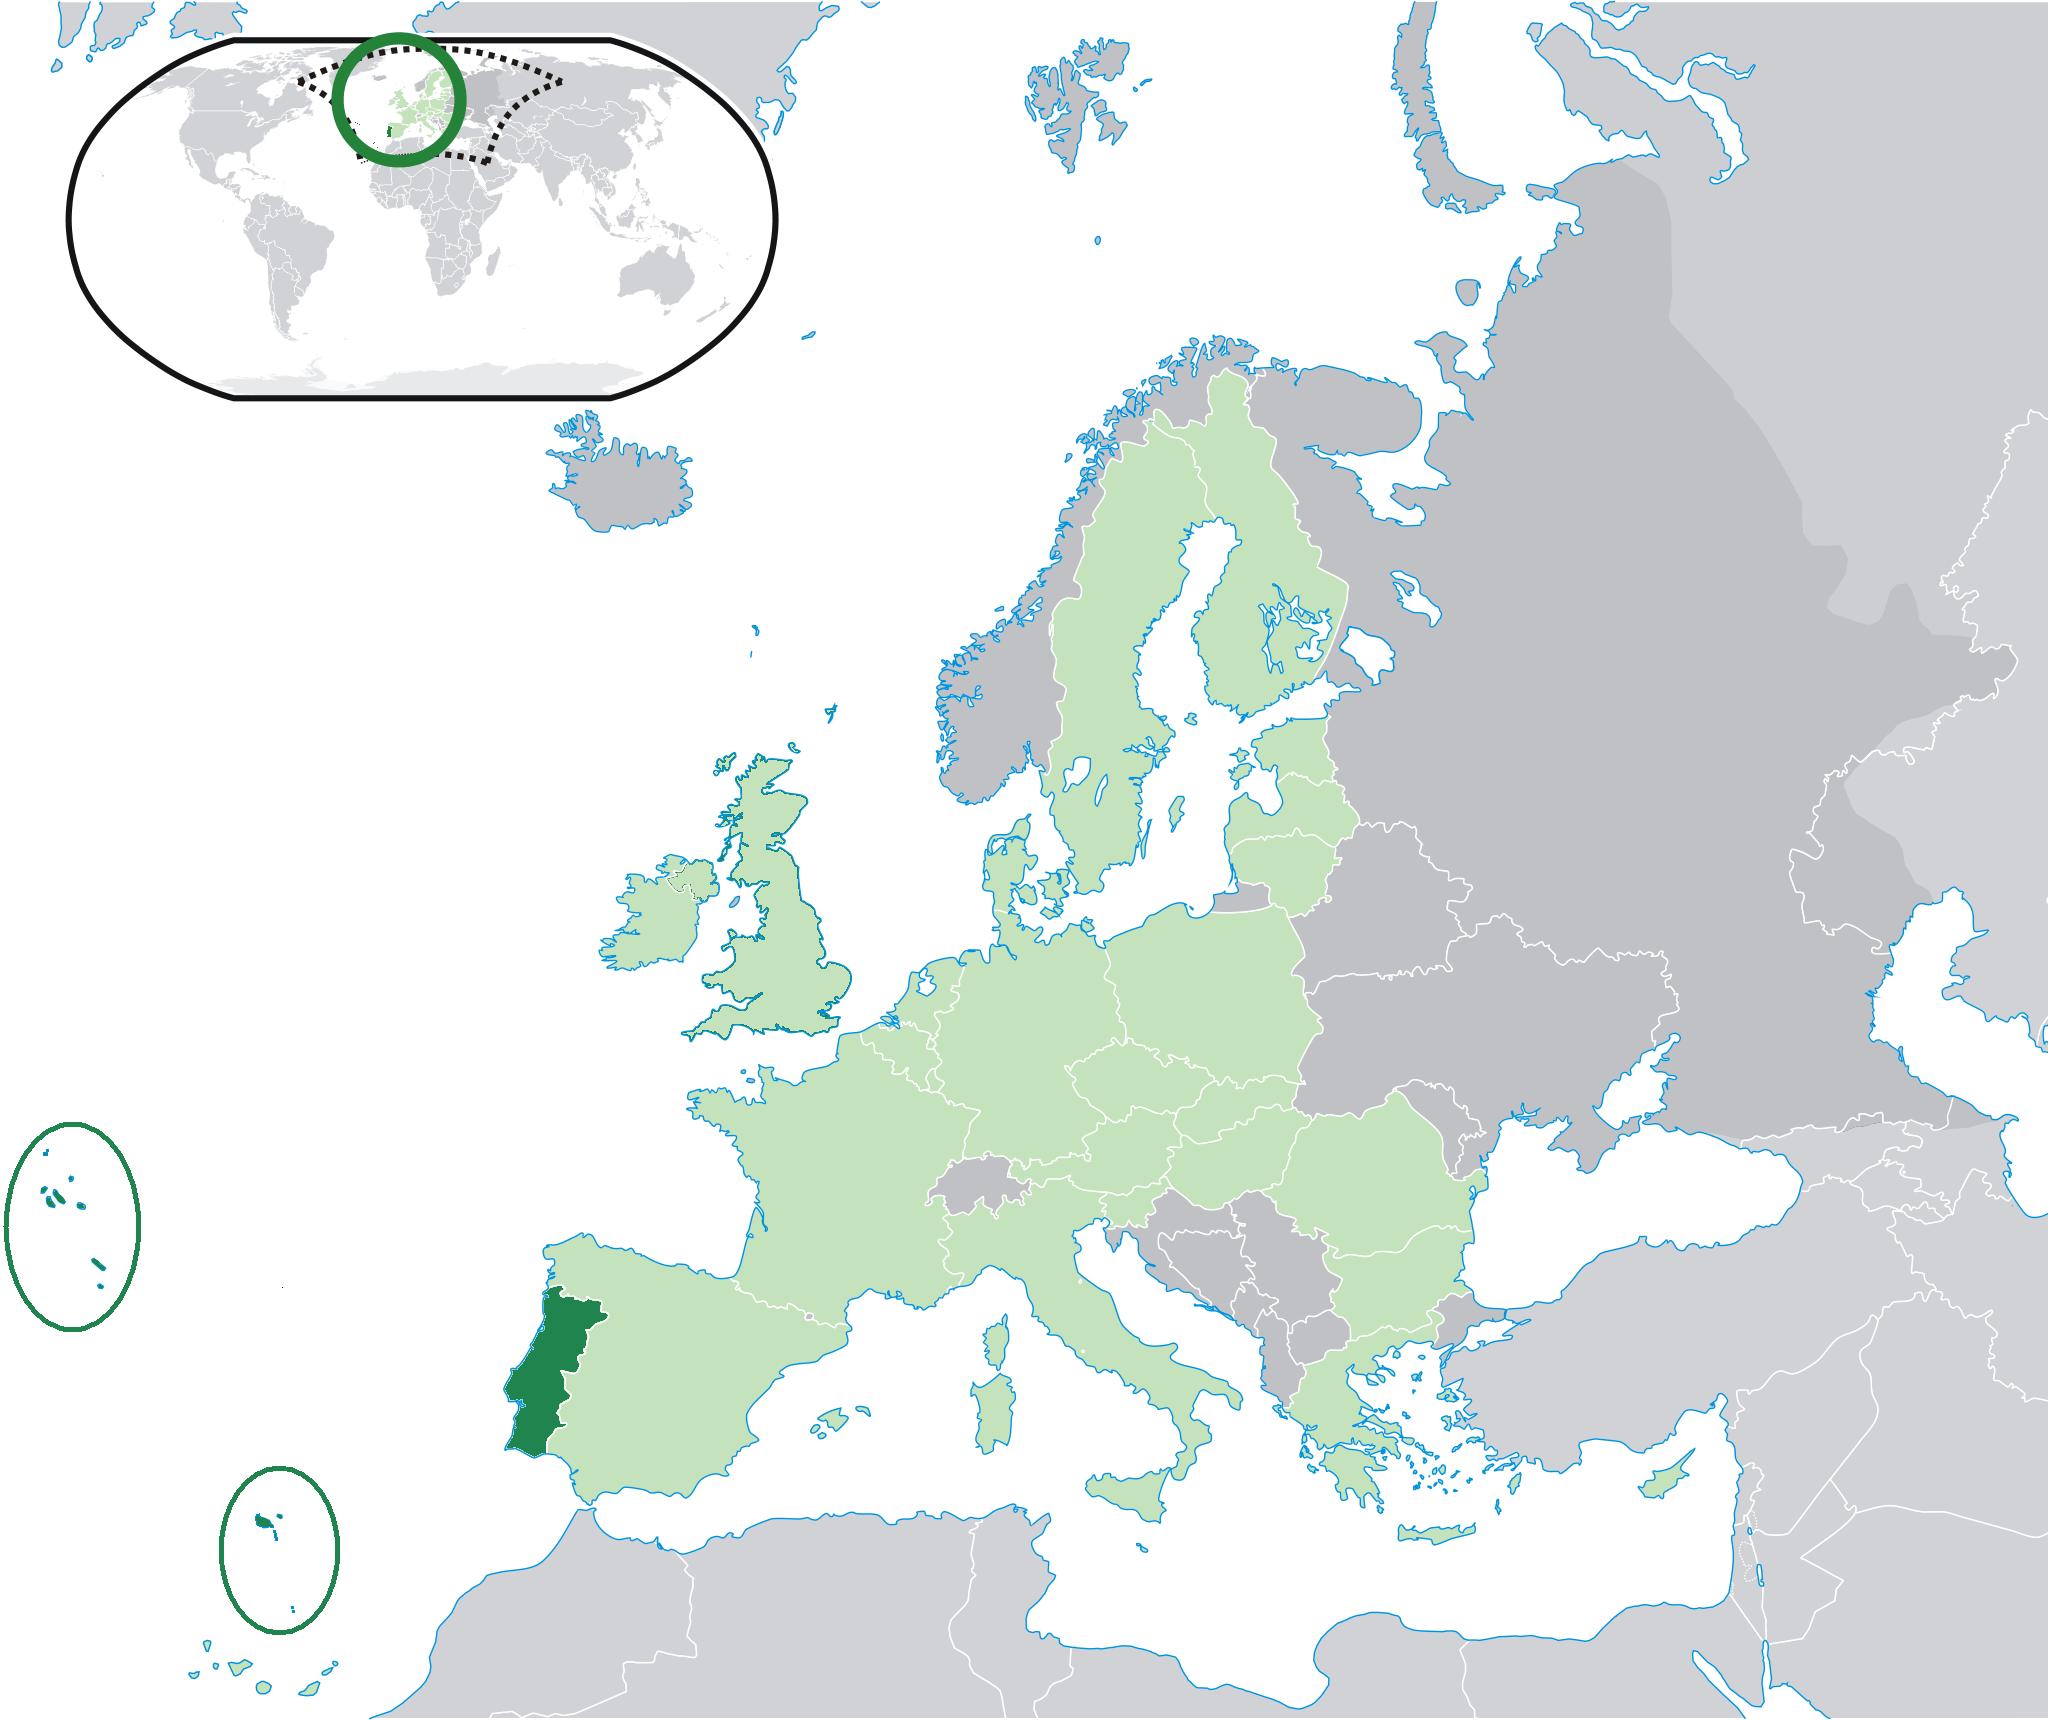 Mapa de todos os países com delegados ativos na EYCN: (1) Portugal